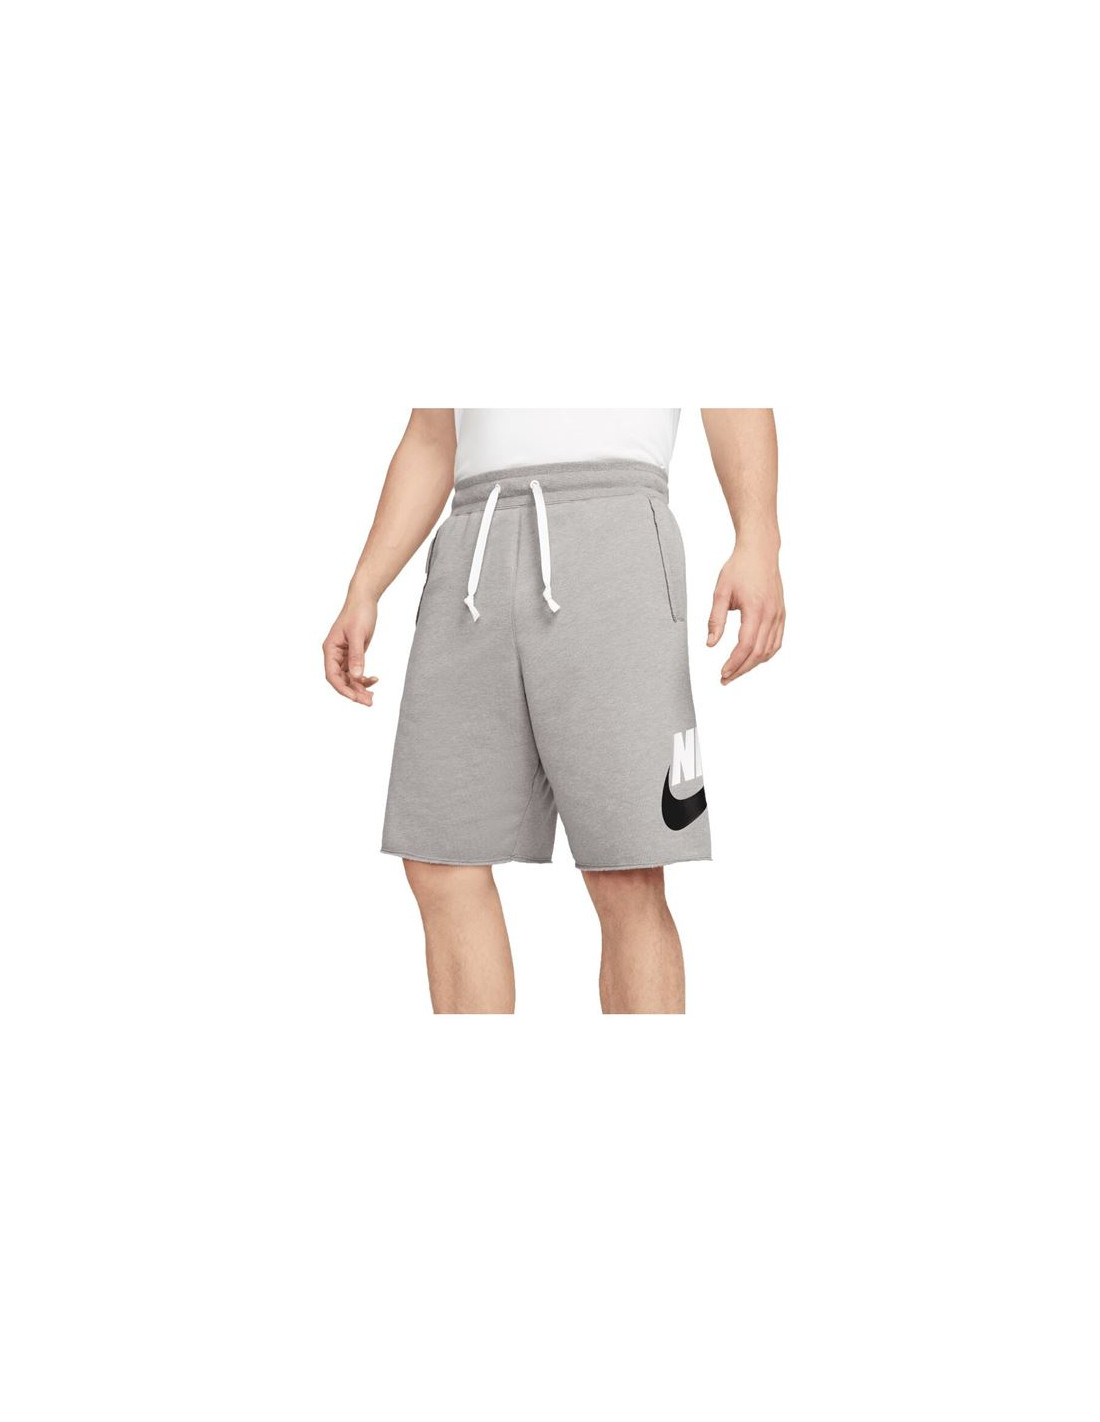 Pantalones cortos nike sport classic essentials hombre grey